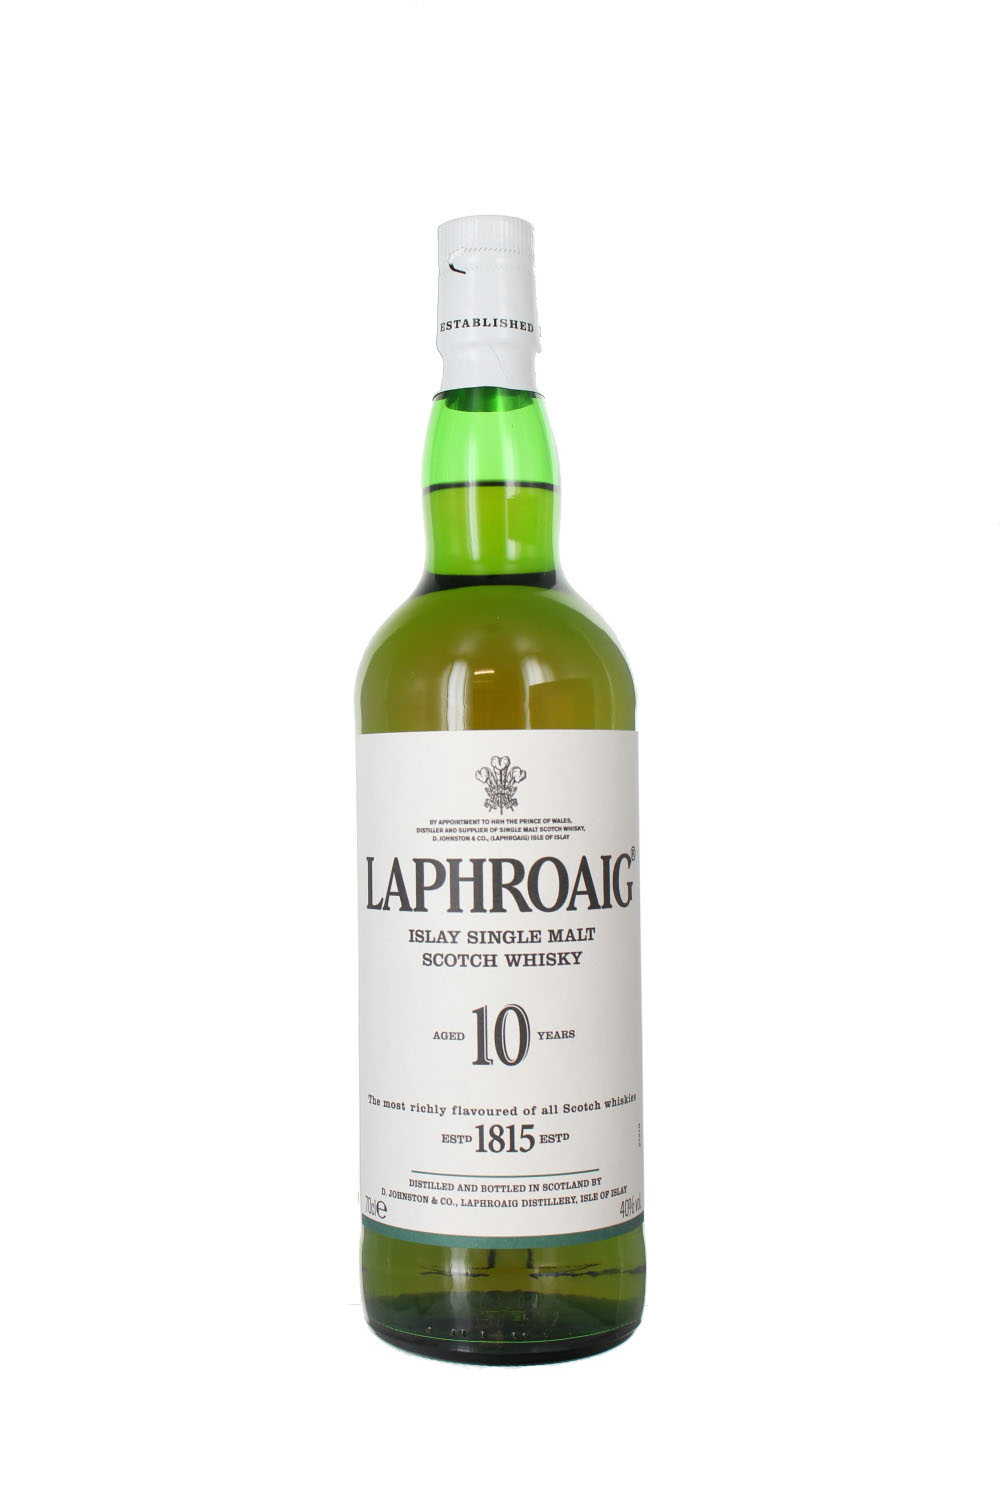 BUY] Laphroaig 10 Year Old Scotch Whisky